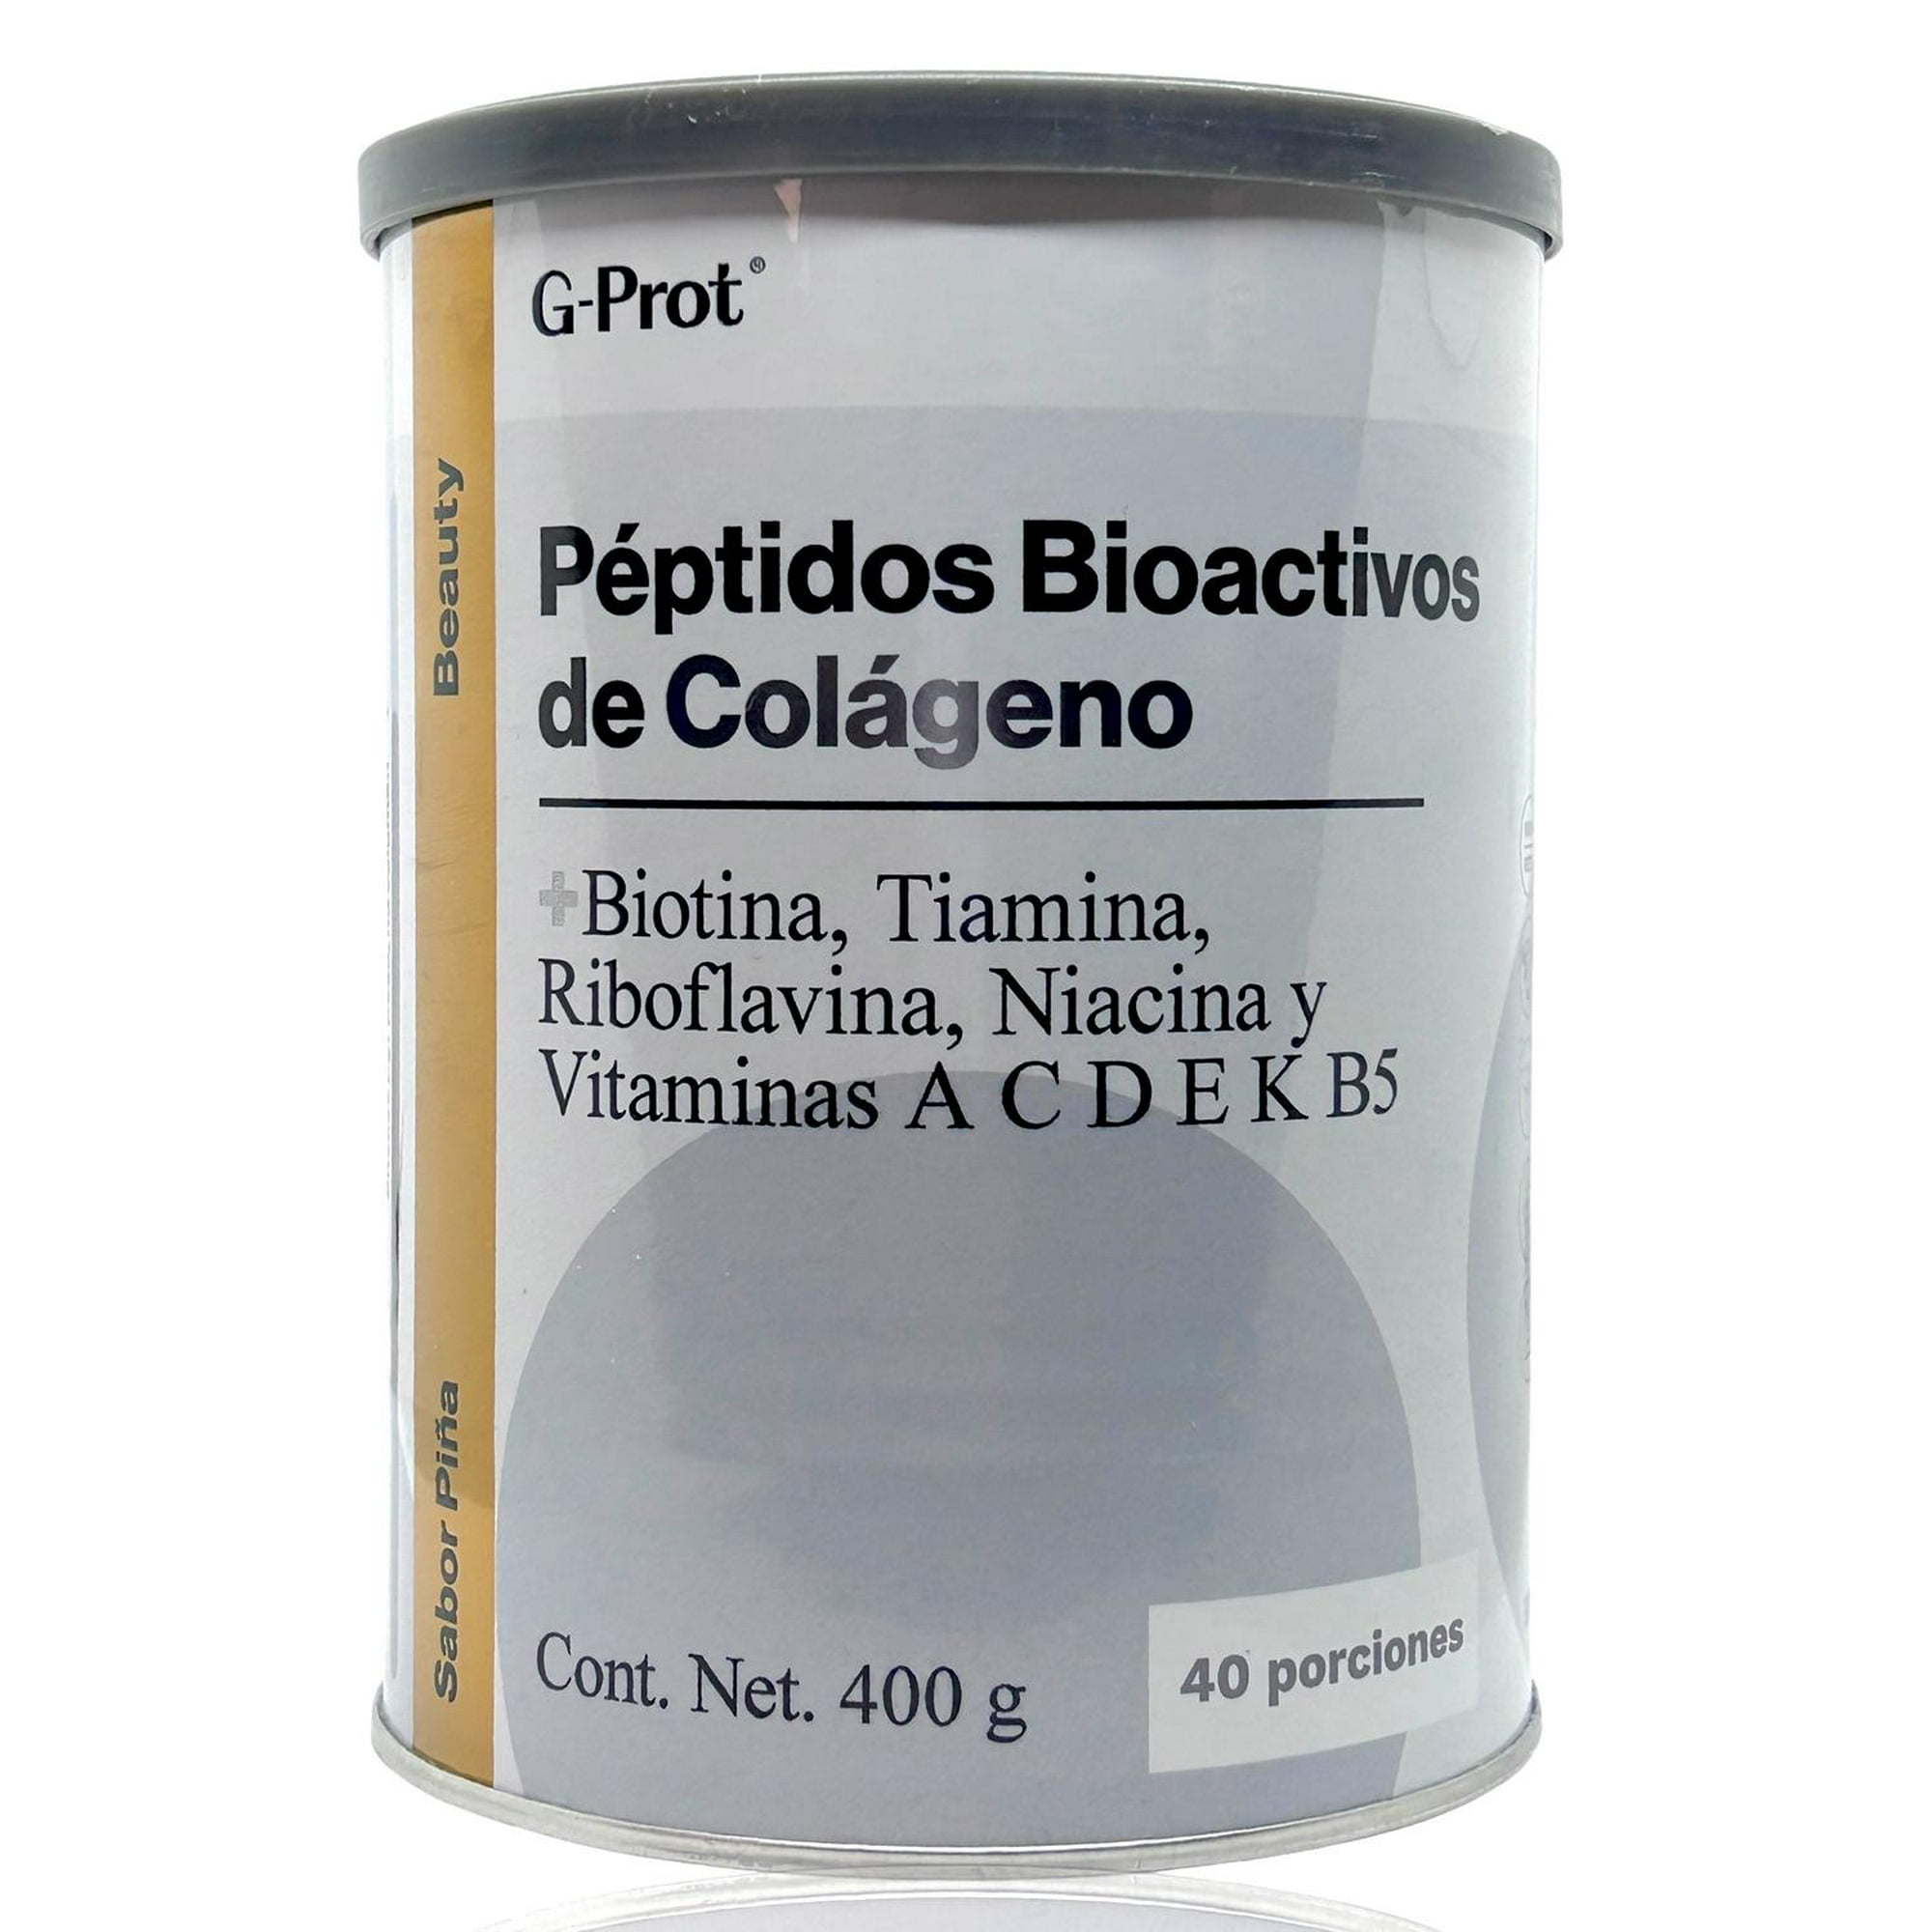 Glucosamina + Condroitina + Colágeno Tipo 2 Puro 60 Cps Sabor Sin